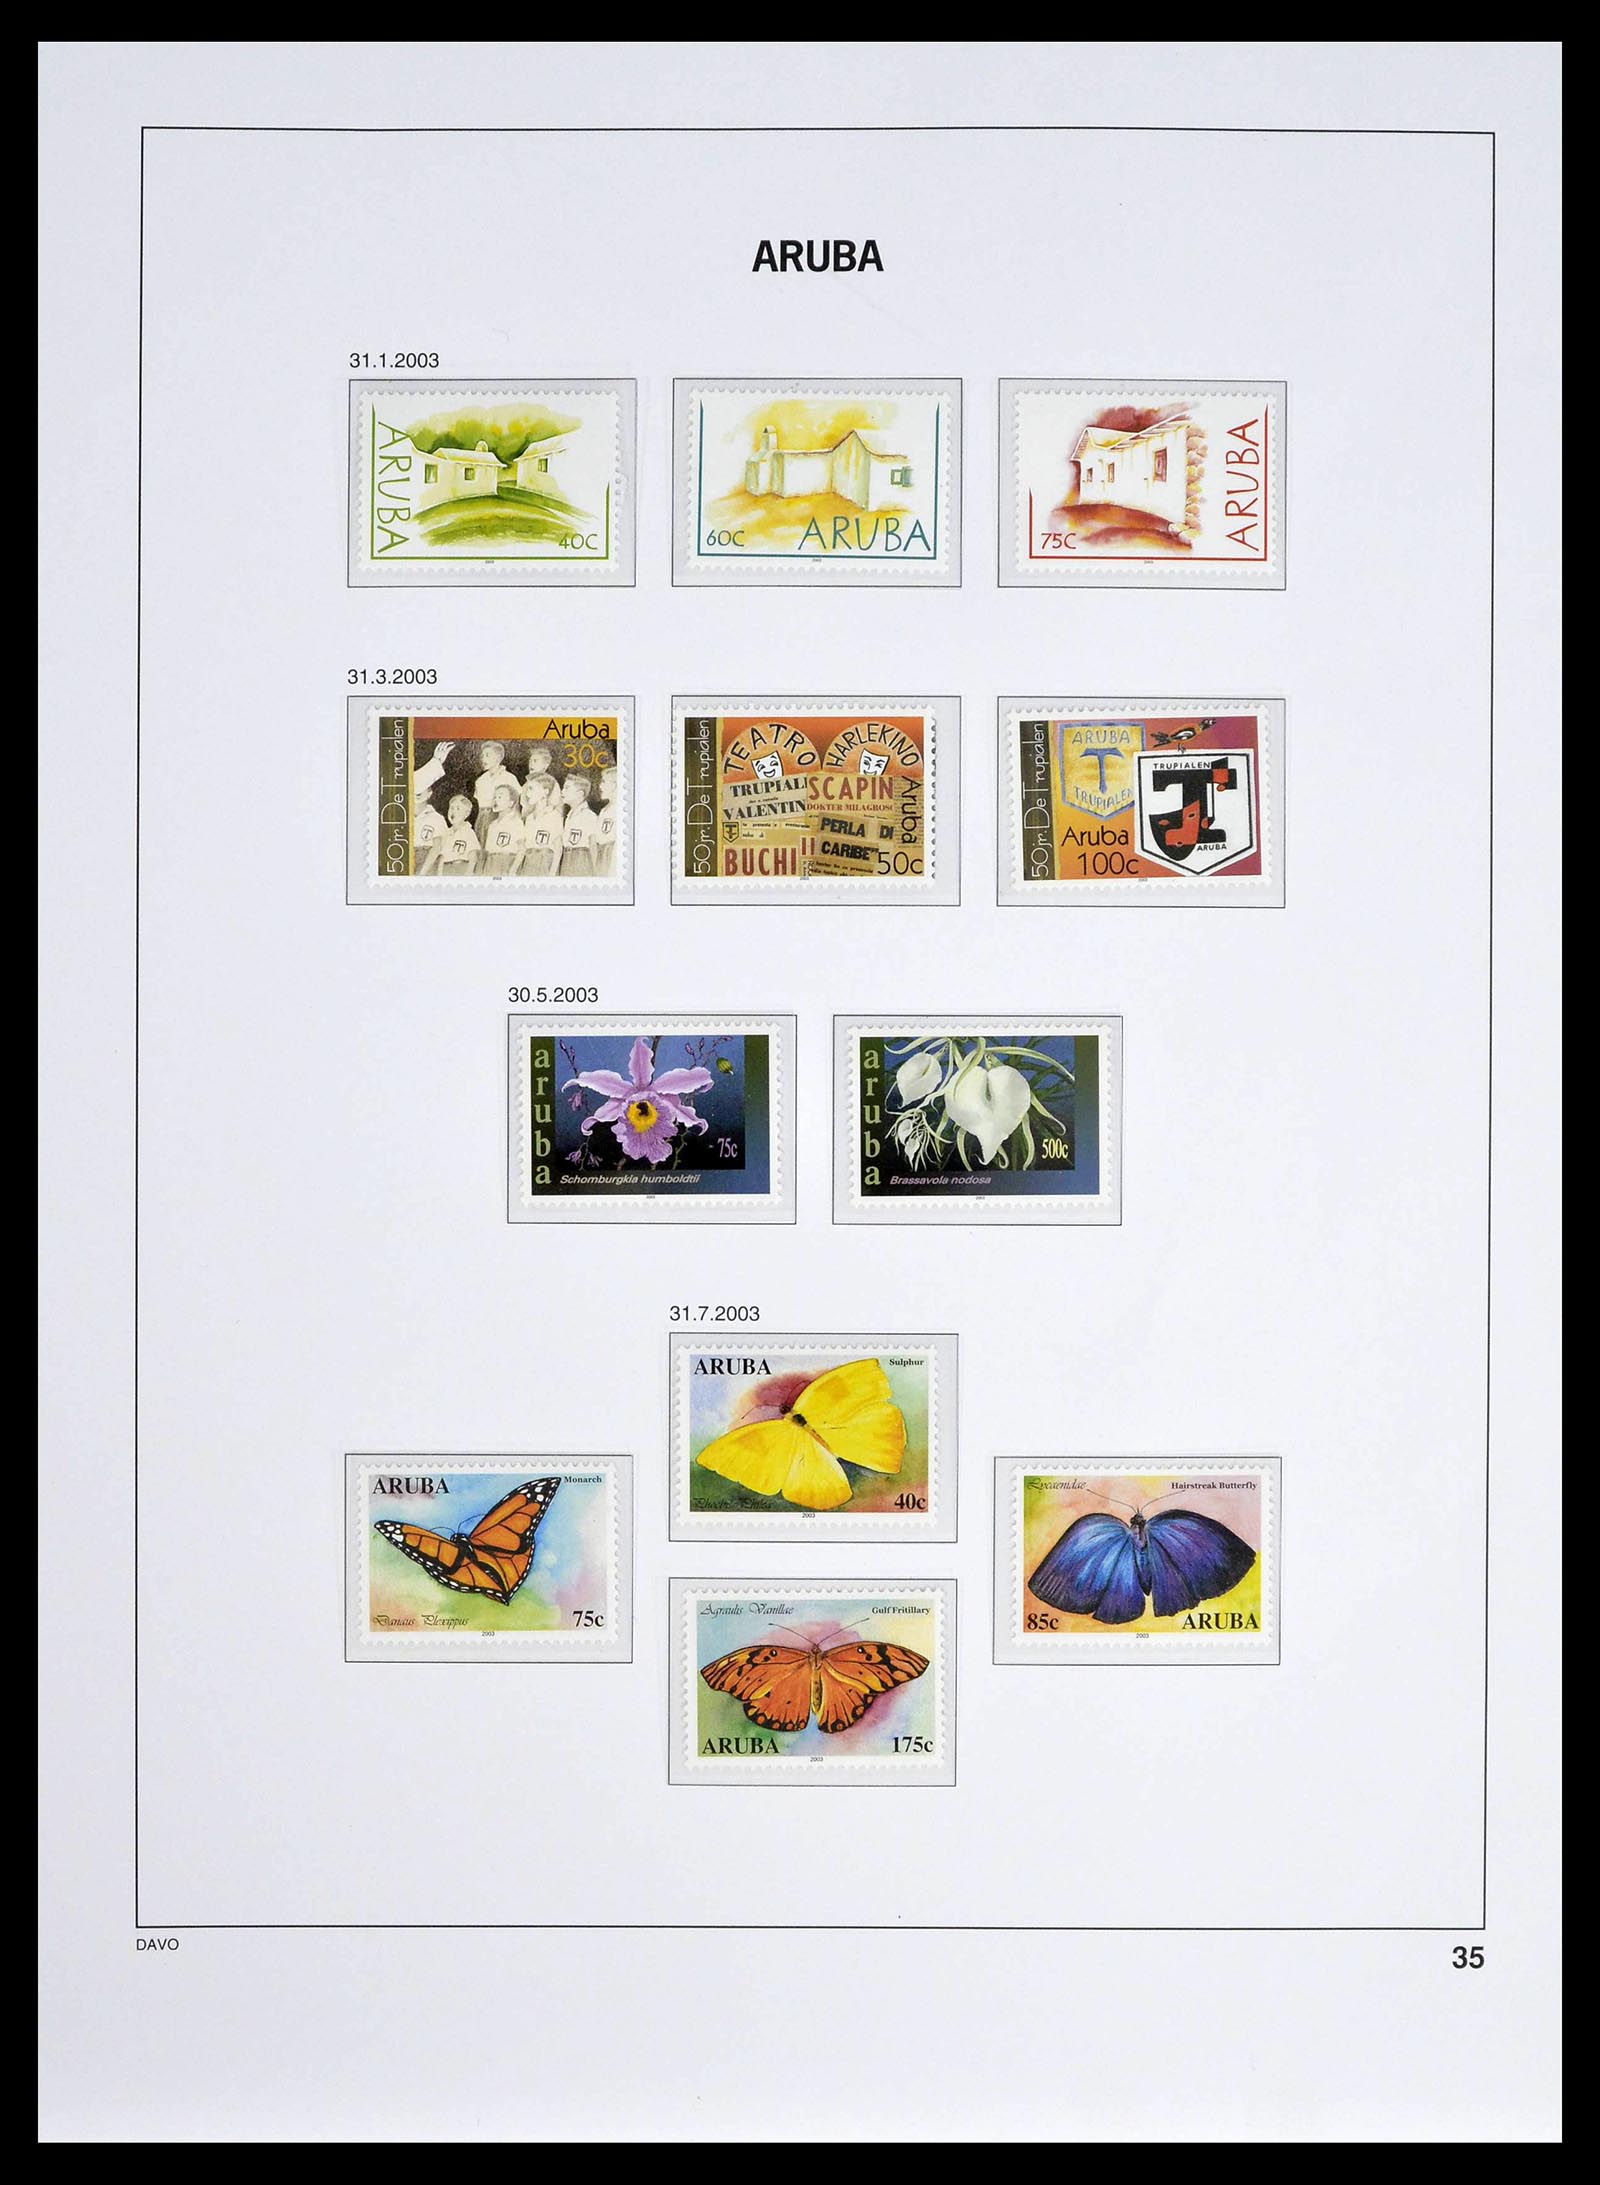 39361 0035 - Stamp collection 39361 Aruba 1986-2013.